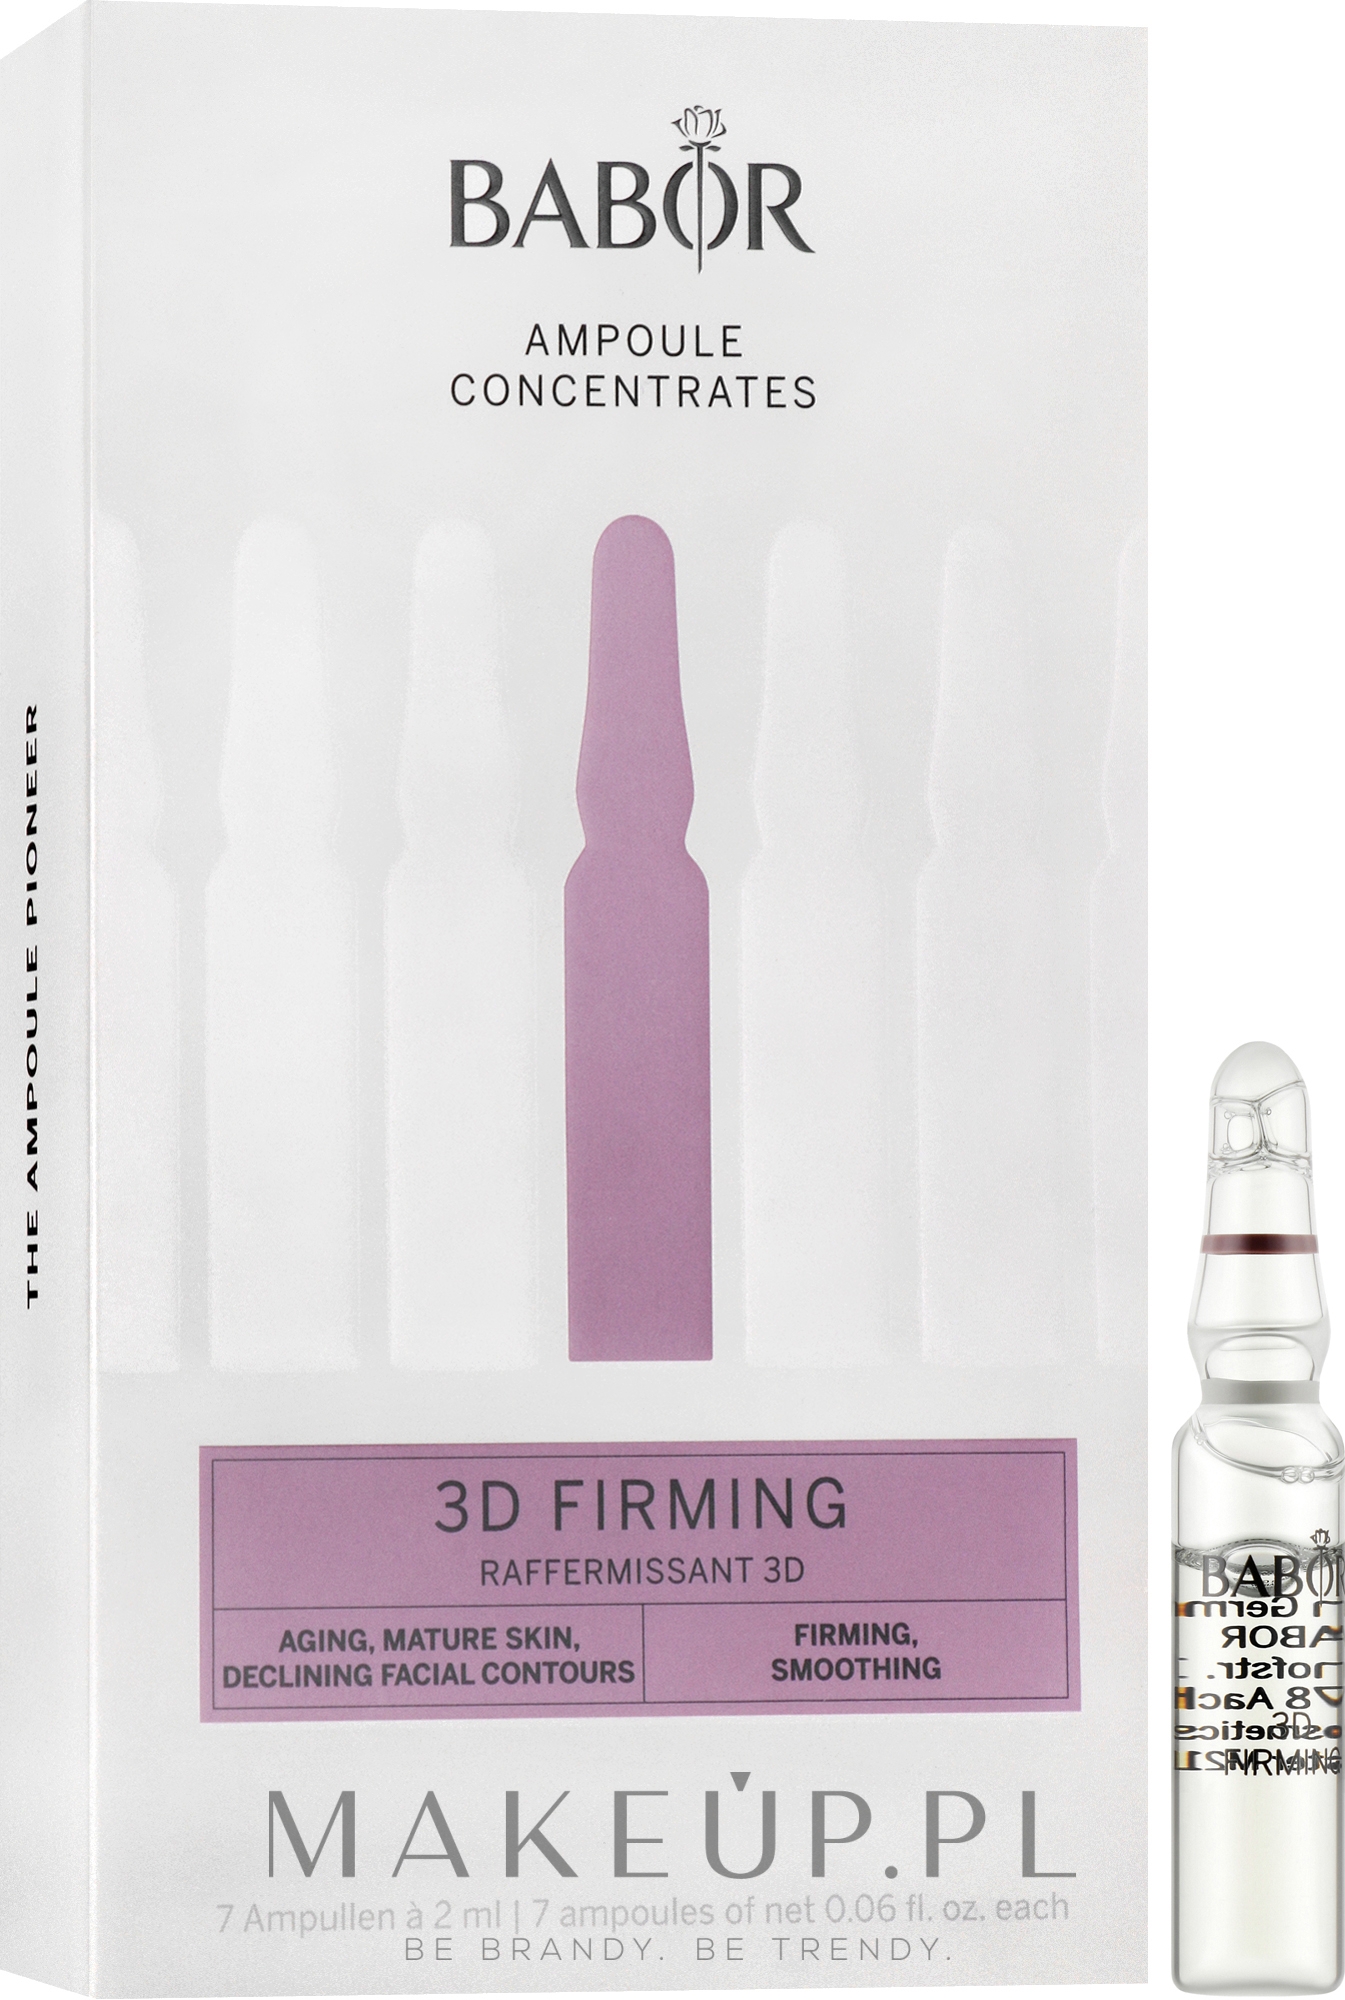 Ampułki do pielęgnacji twarzy Wzmocnienie 3D - Babor Ampoule Concentrates Lift & Firm 3D Firming — Zdjęcie 7 x 2 ml